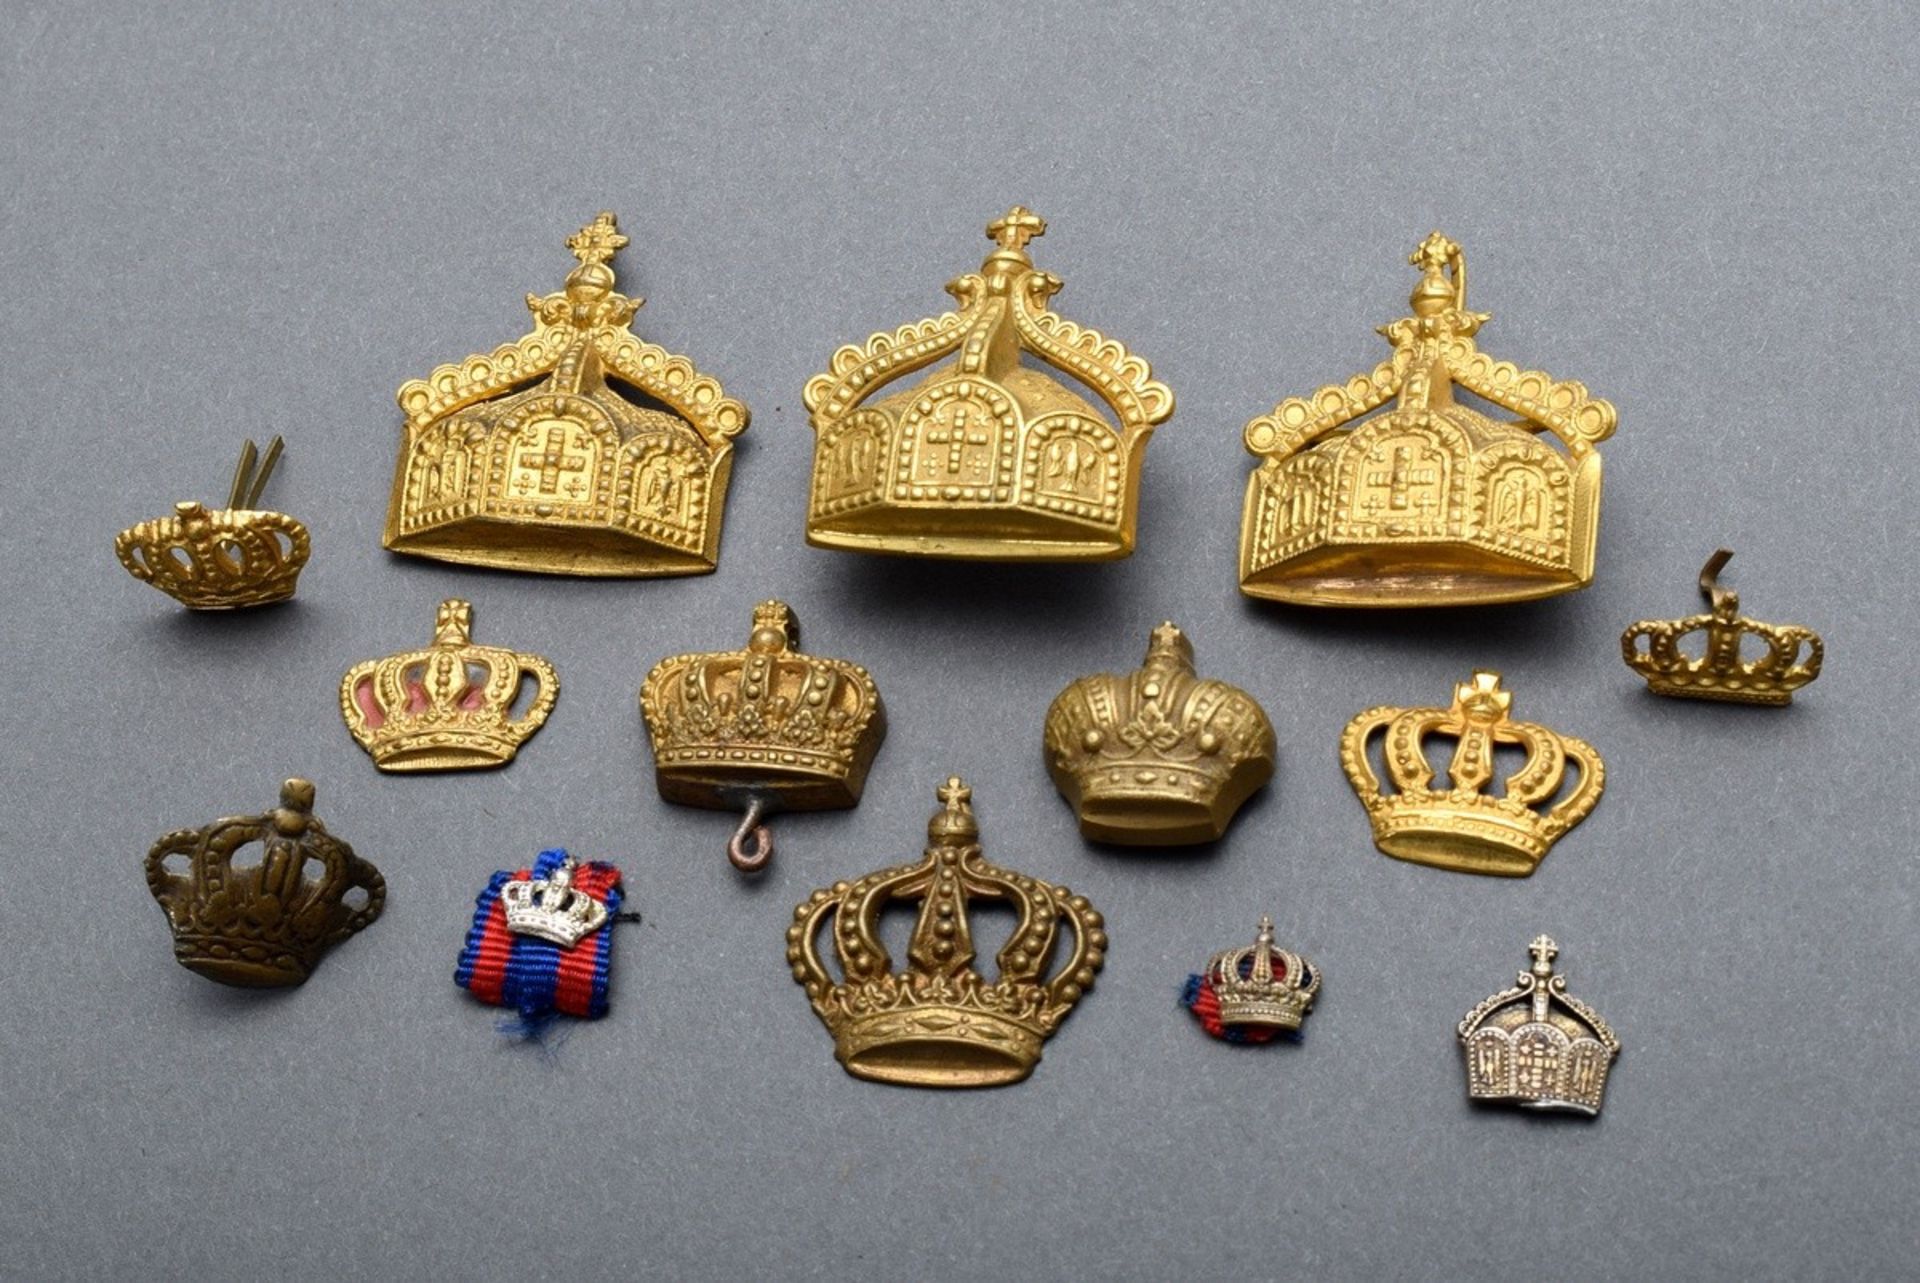 14 Diverse Metall "Kronen" Kaiserliche Marine/Königreich Preußen in verschiedenen Größen und Ausfüh - Bild 2 aus 3